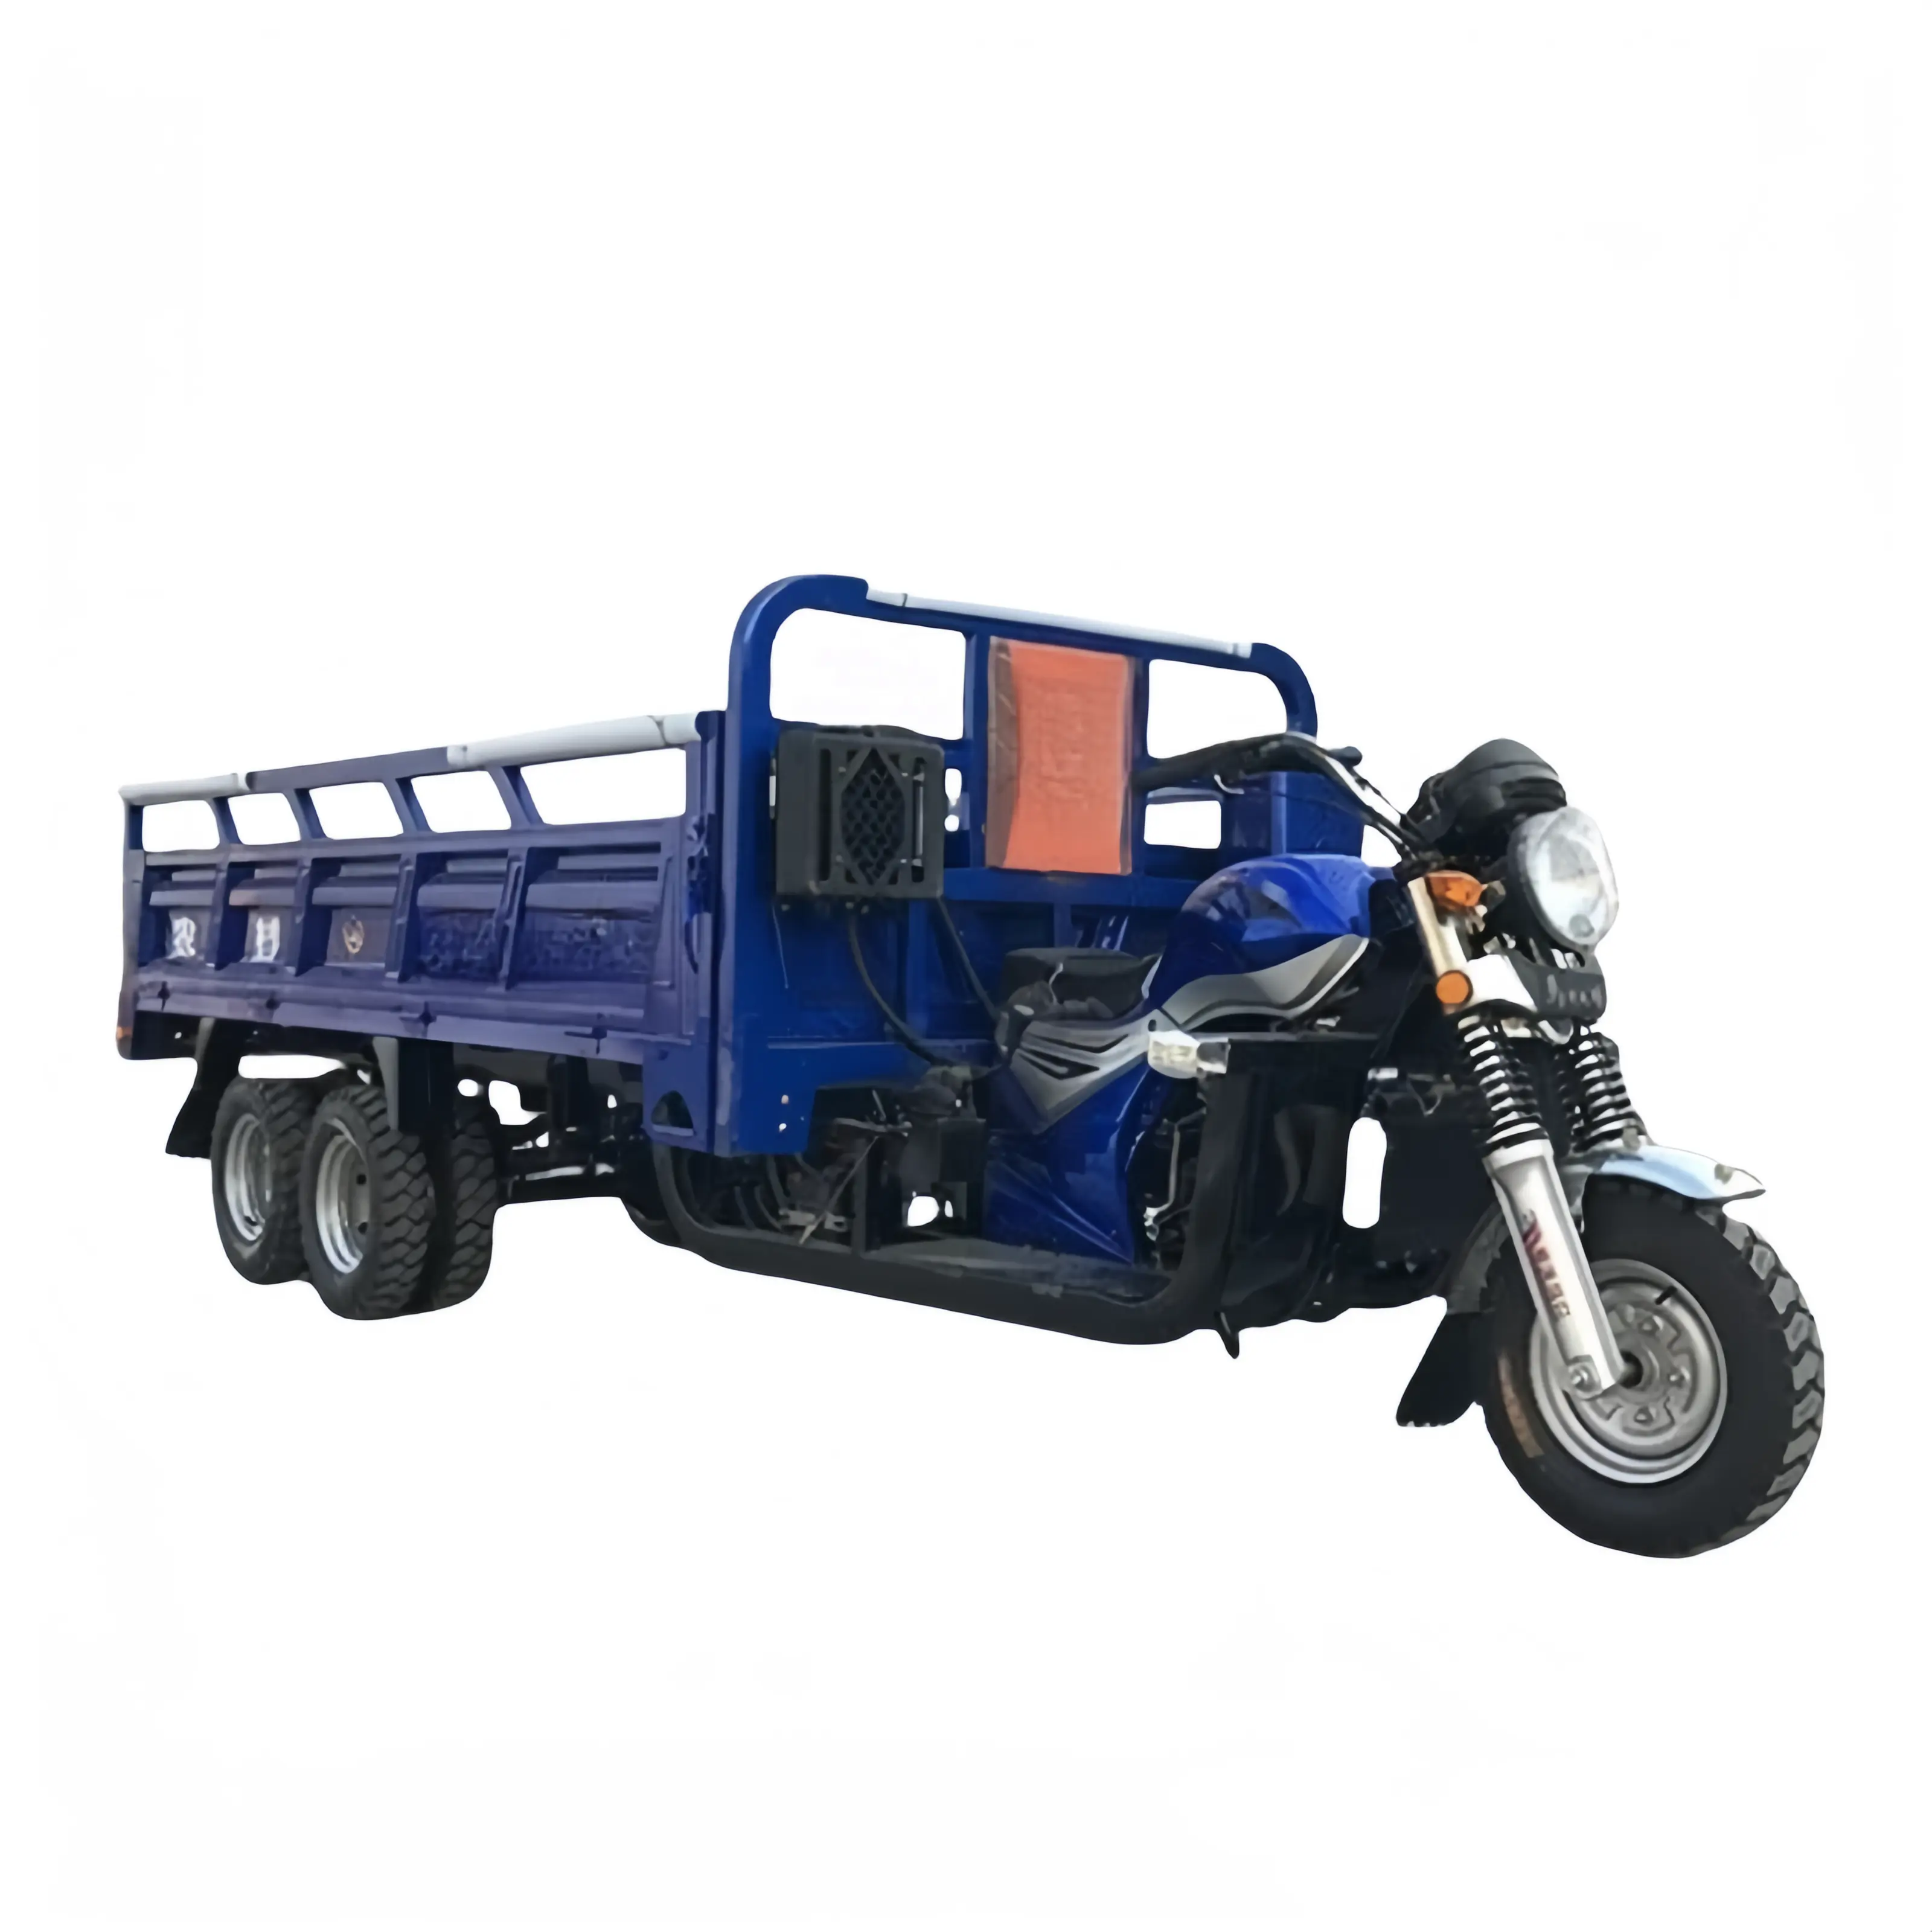 Nuovo stile 250cc triciclo passeggeri e Cargo triciclo carburante benzina tre ruote moto